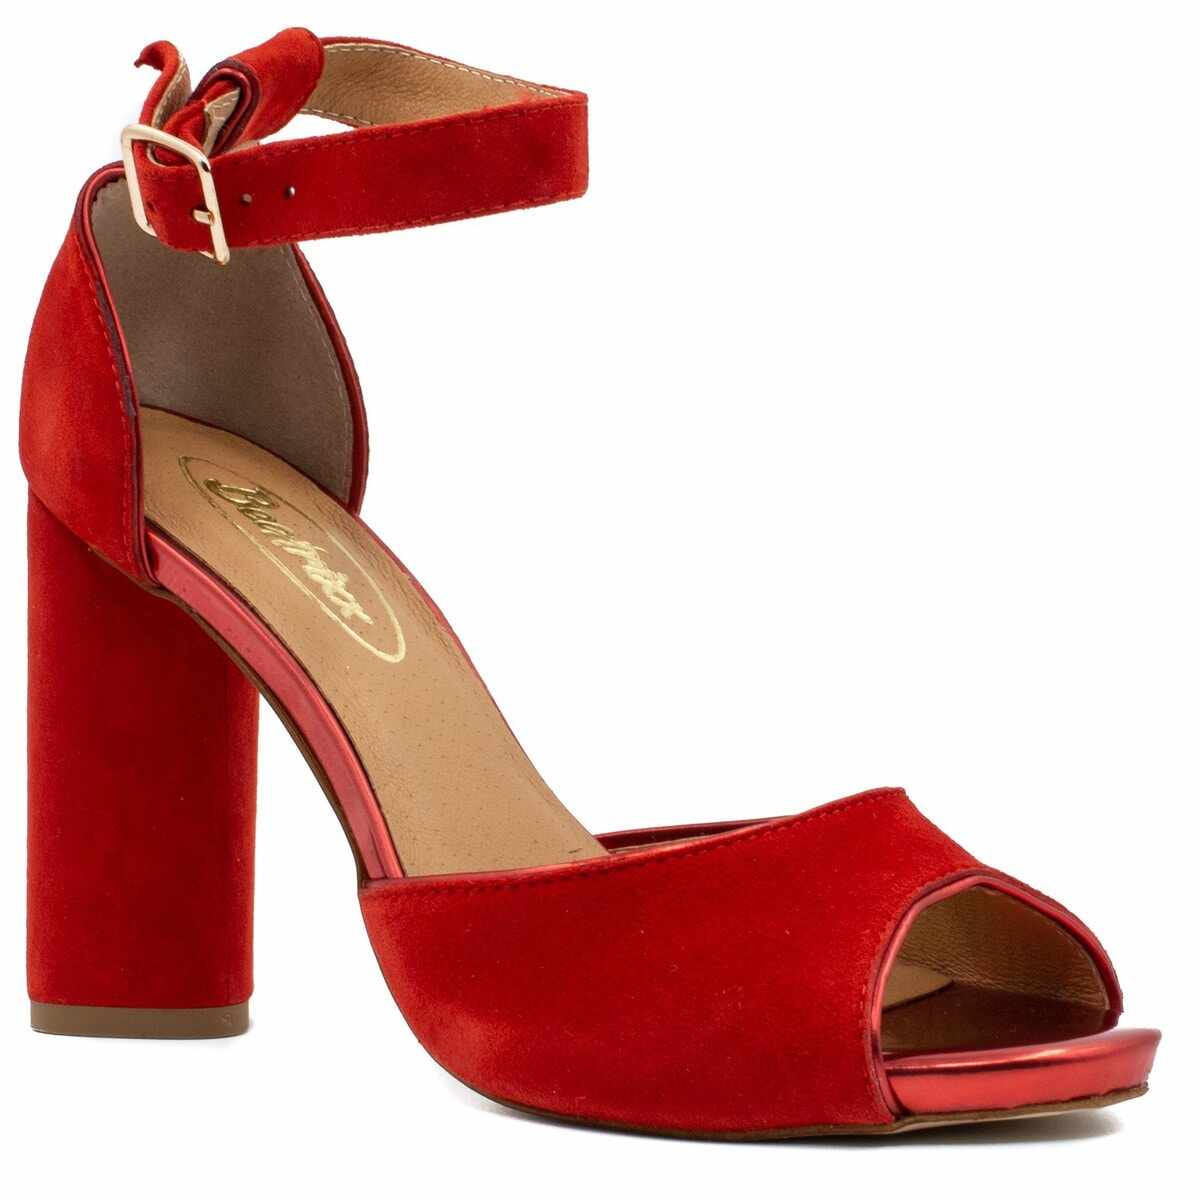 Pantofi eleganti dama, Beatrixx, din piele naturala velur, culoare rosu, cod L1802-R